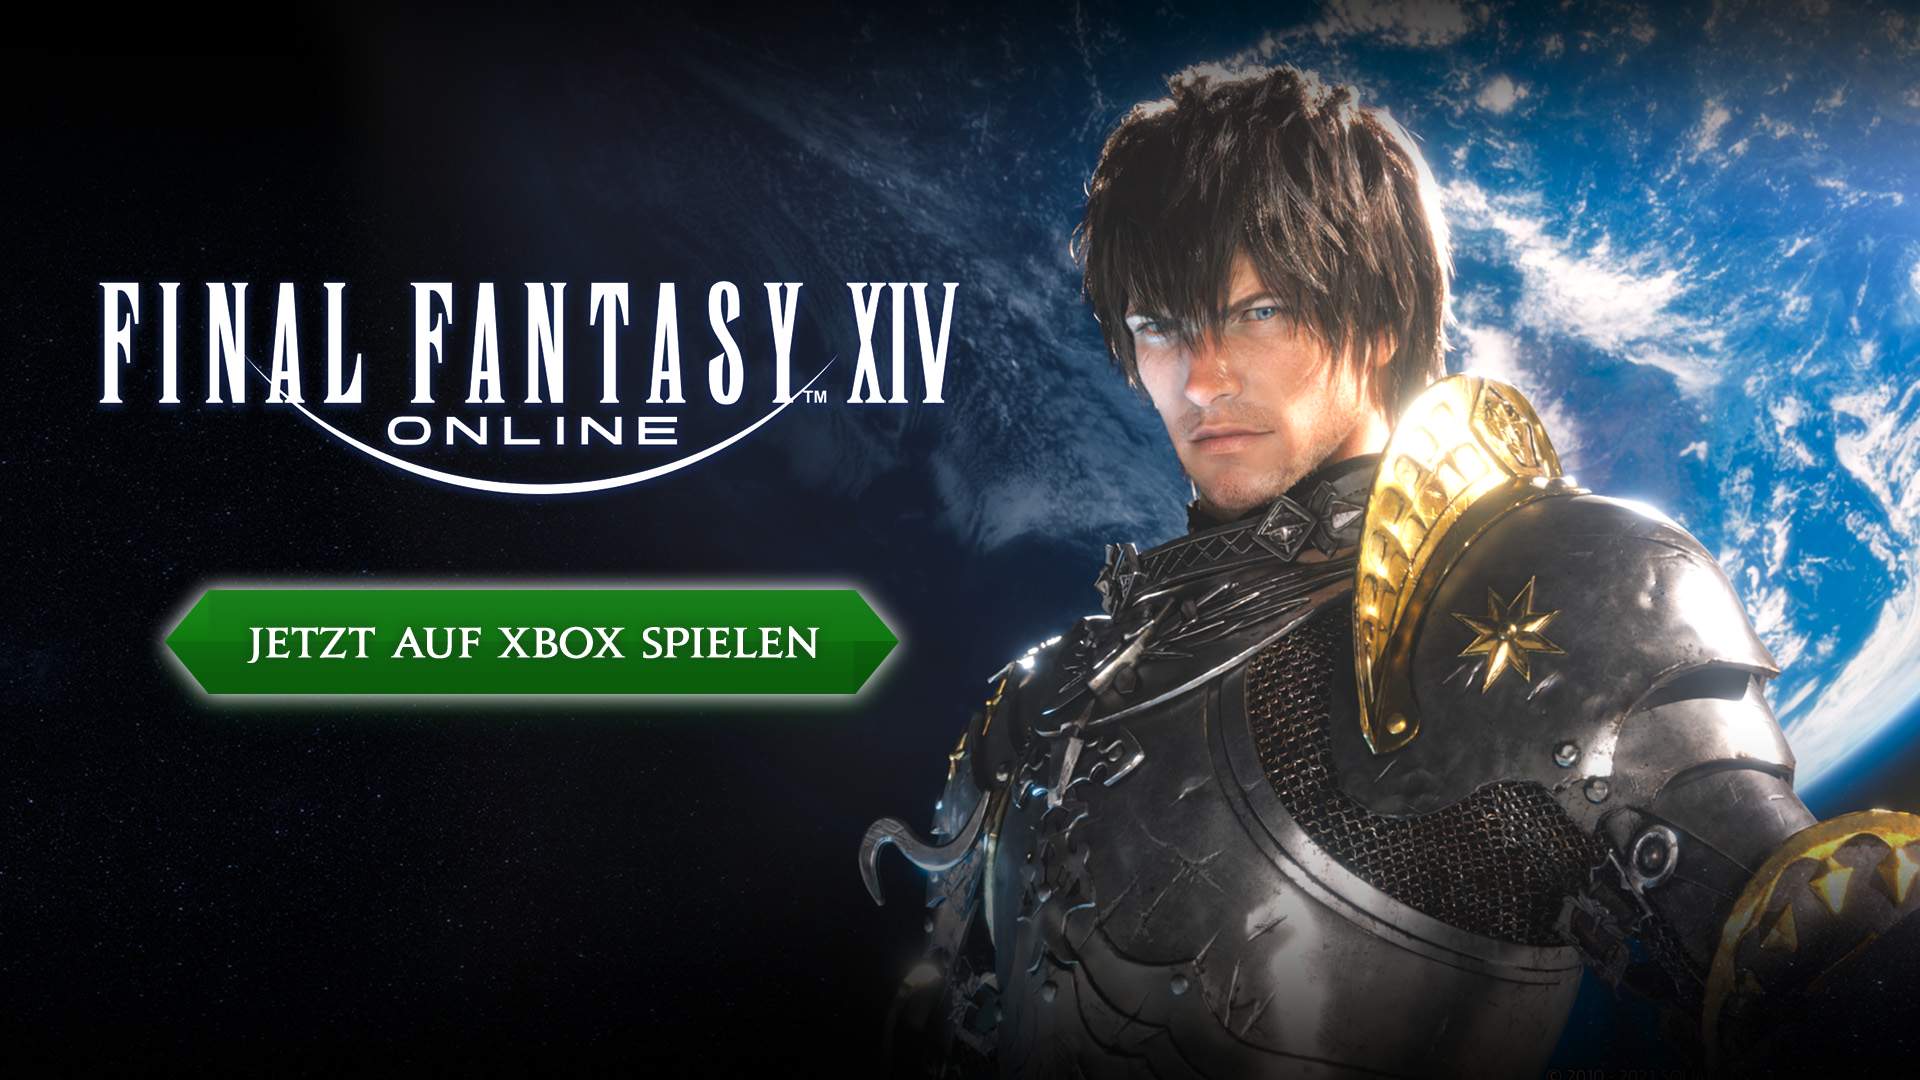 FINAL FANTASY XIV Online ist jetzt für Xbox Series X|S verfügbar!